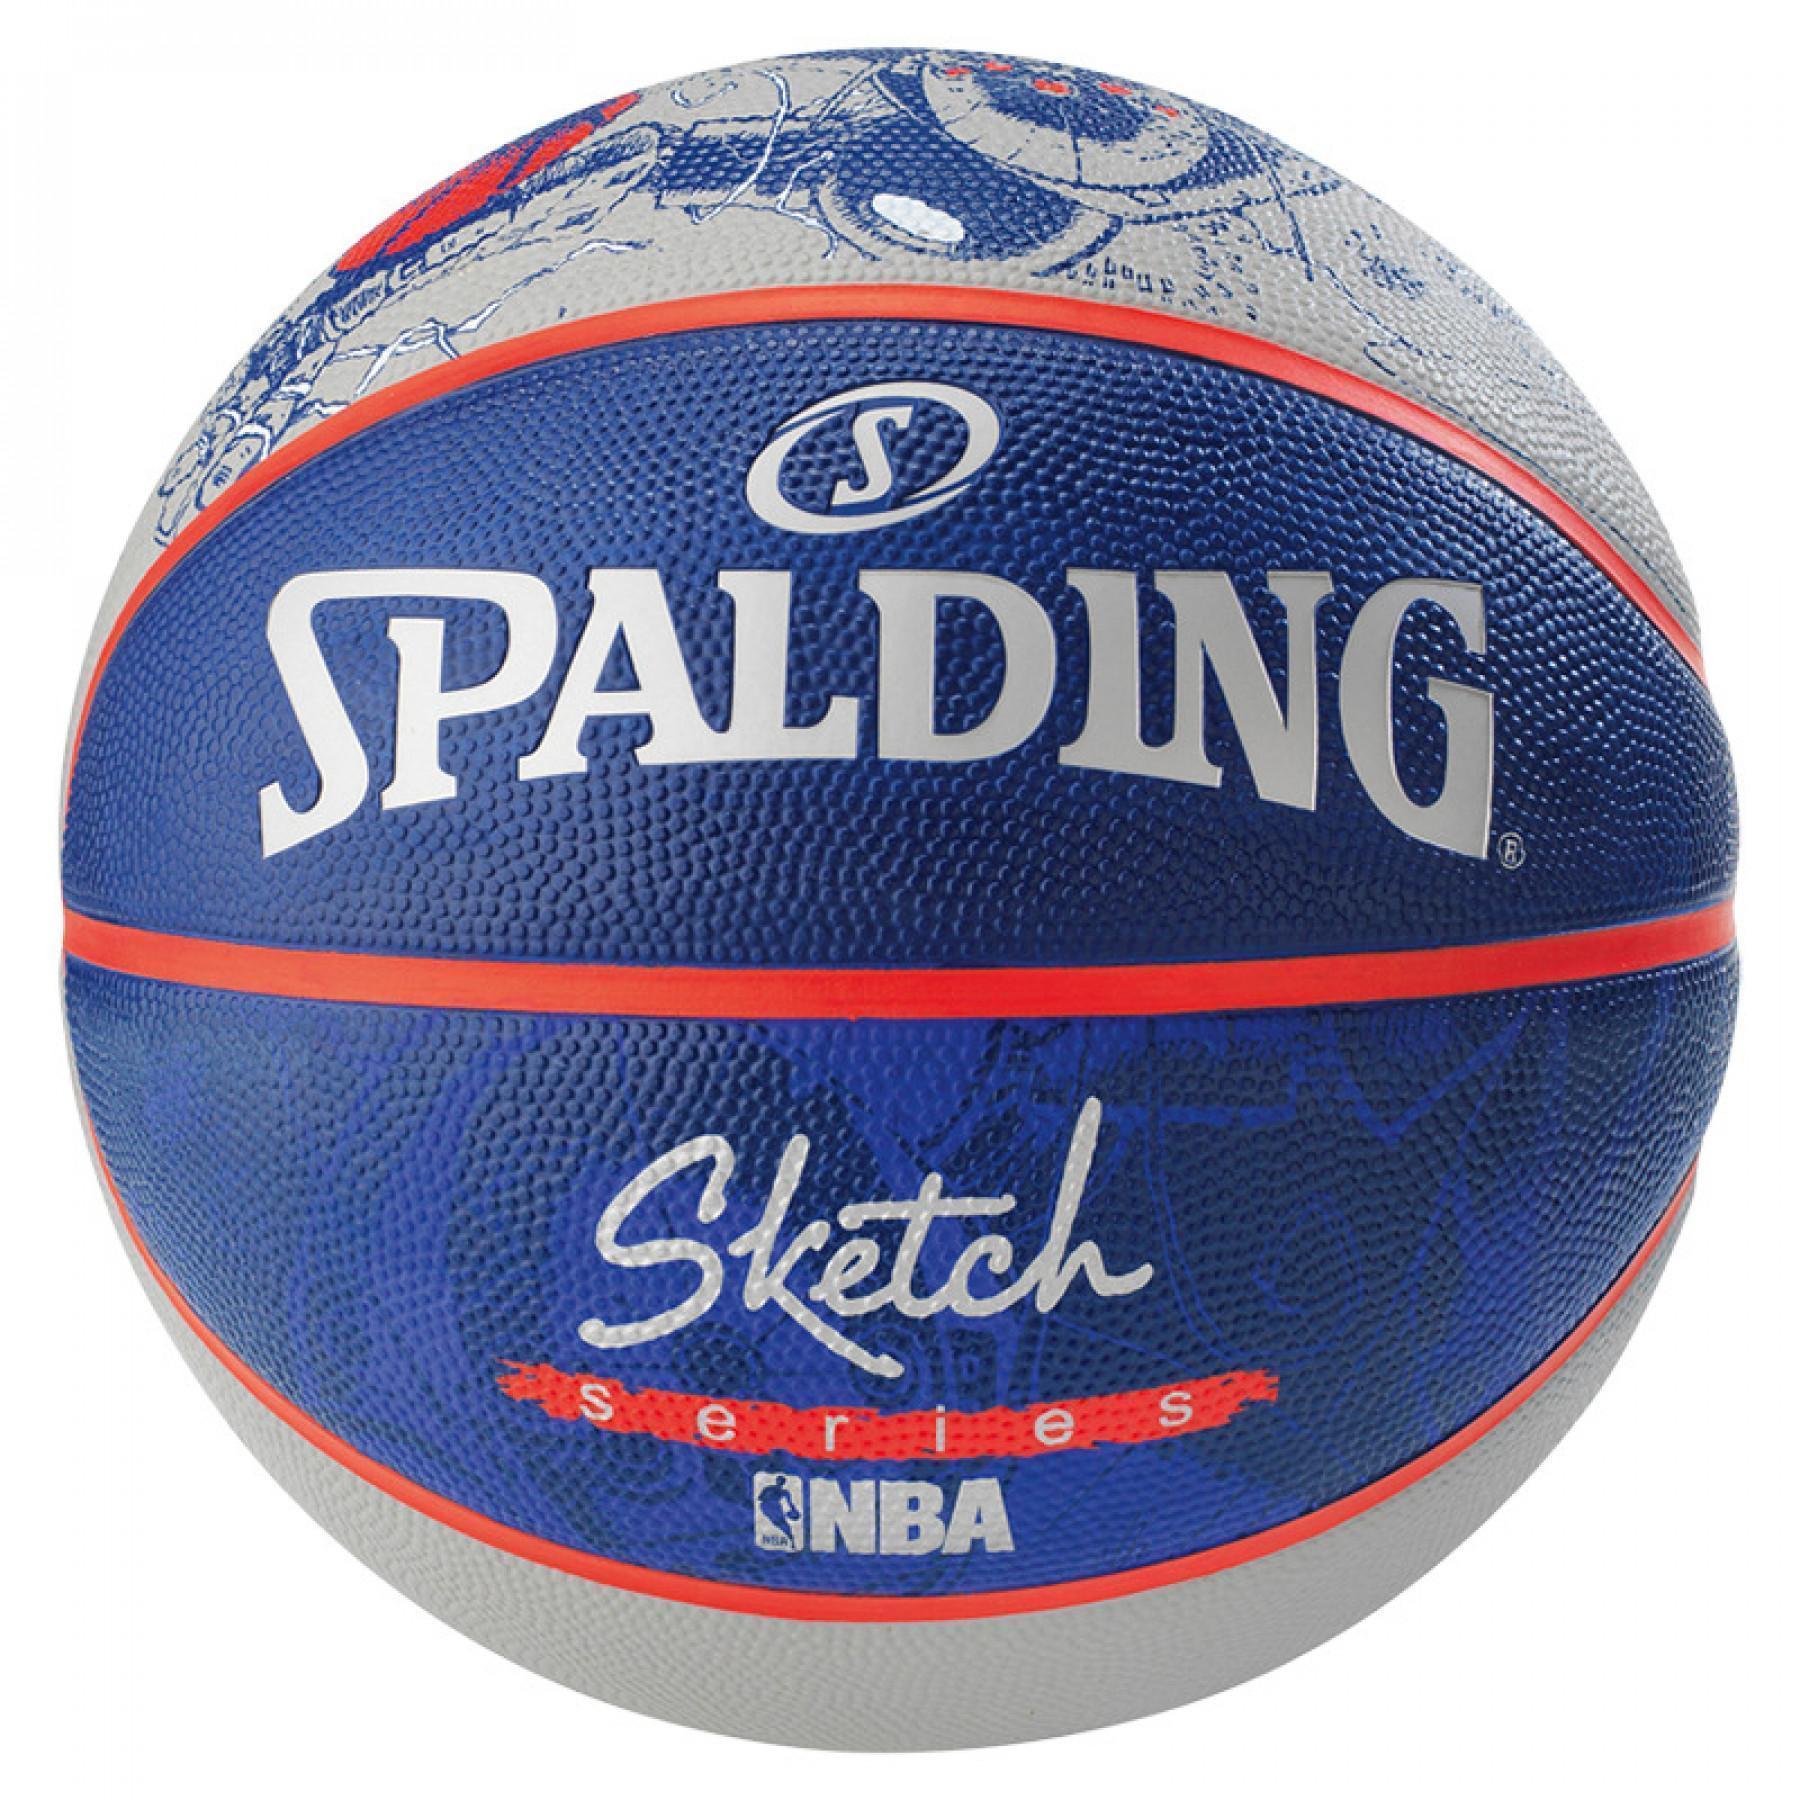 Balon Spalding NBA Sketch Robot (83-677z)